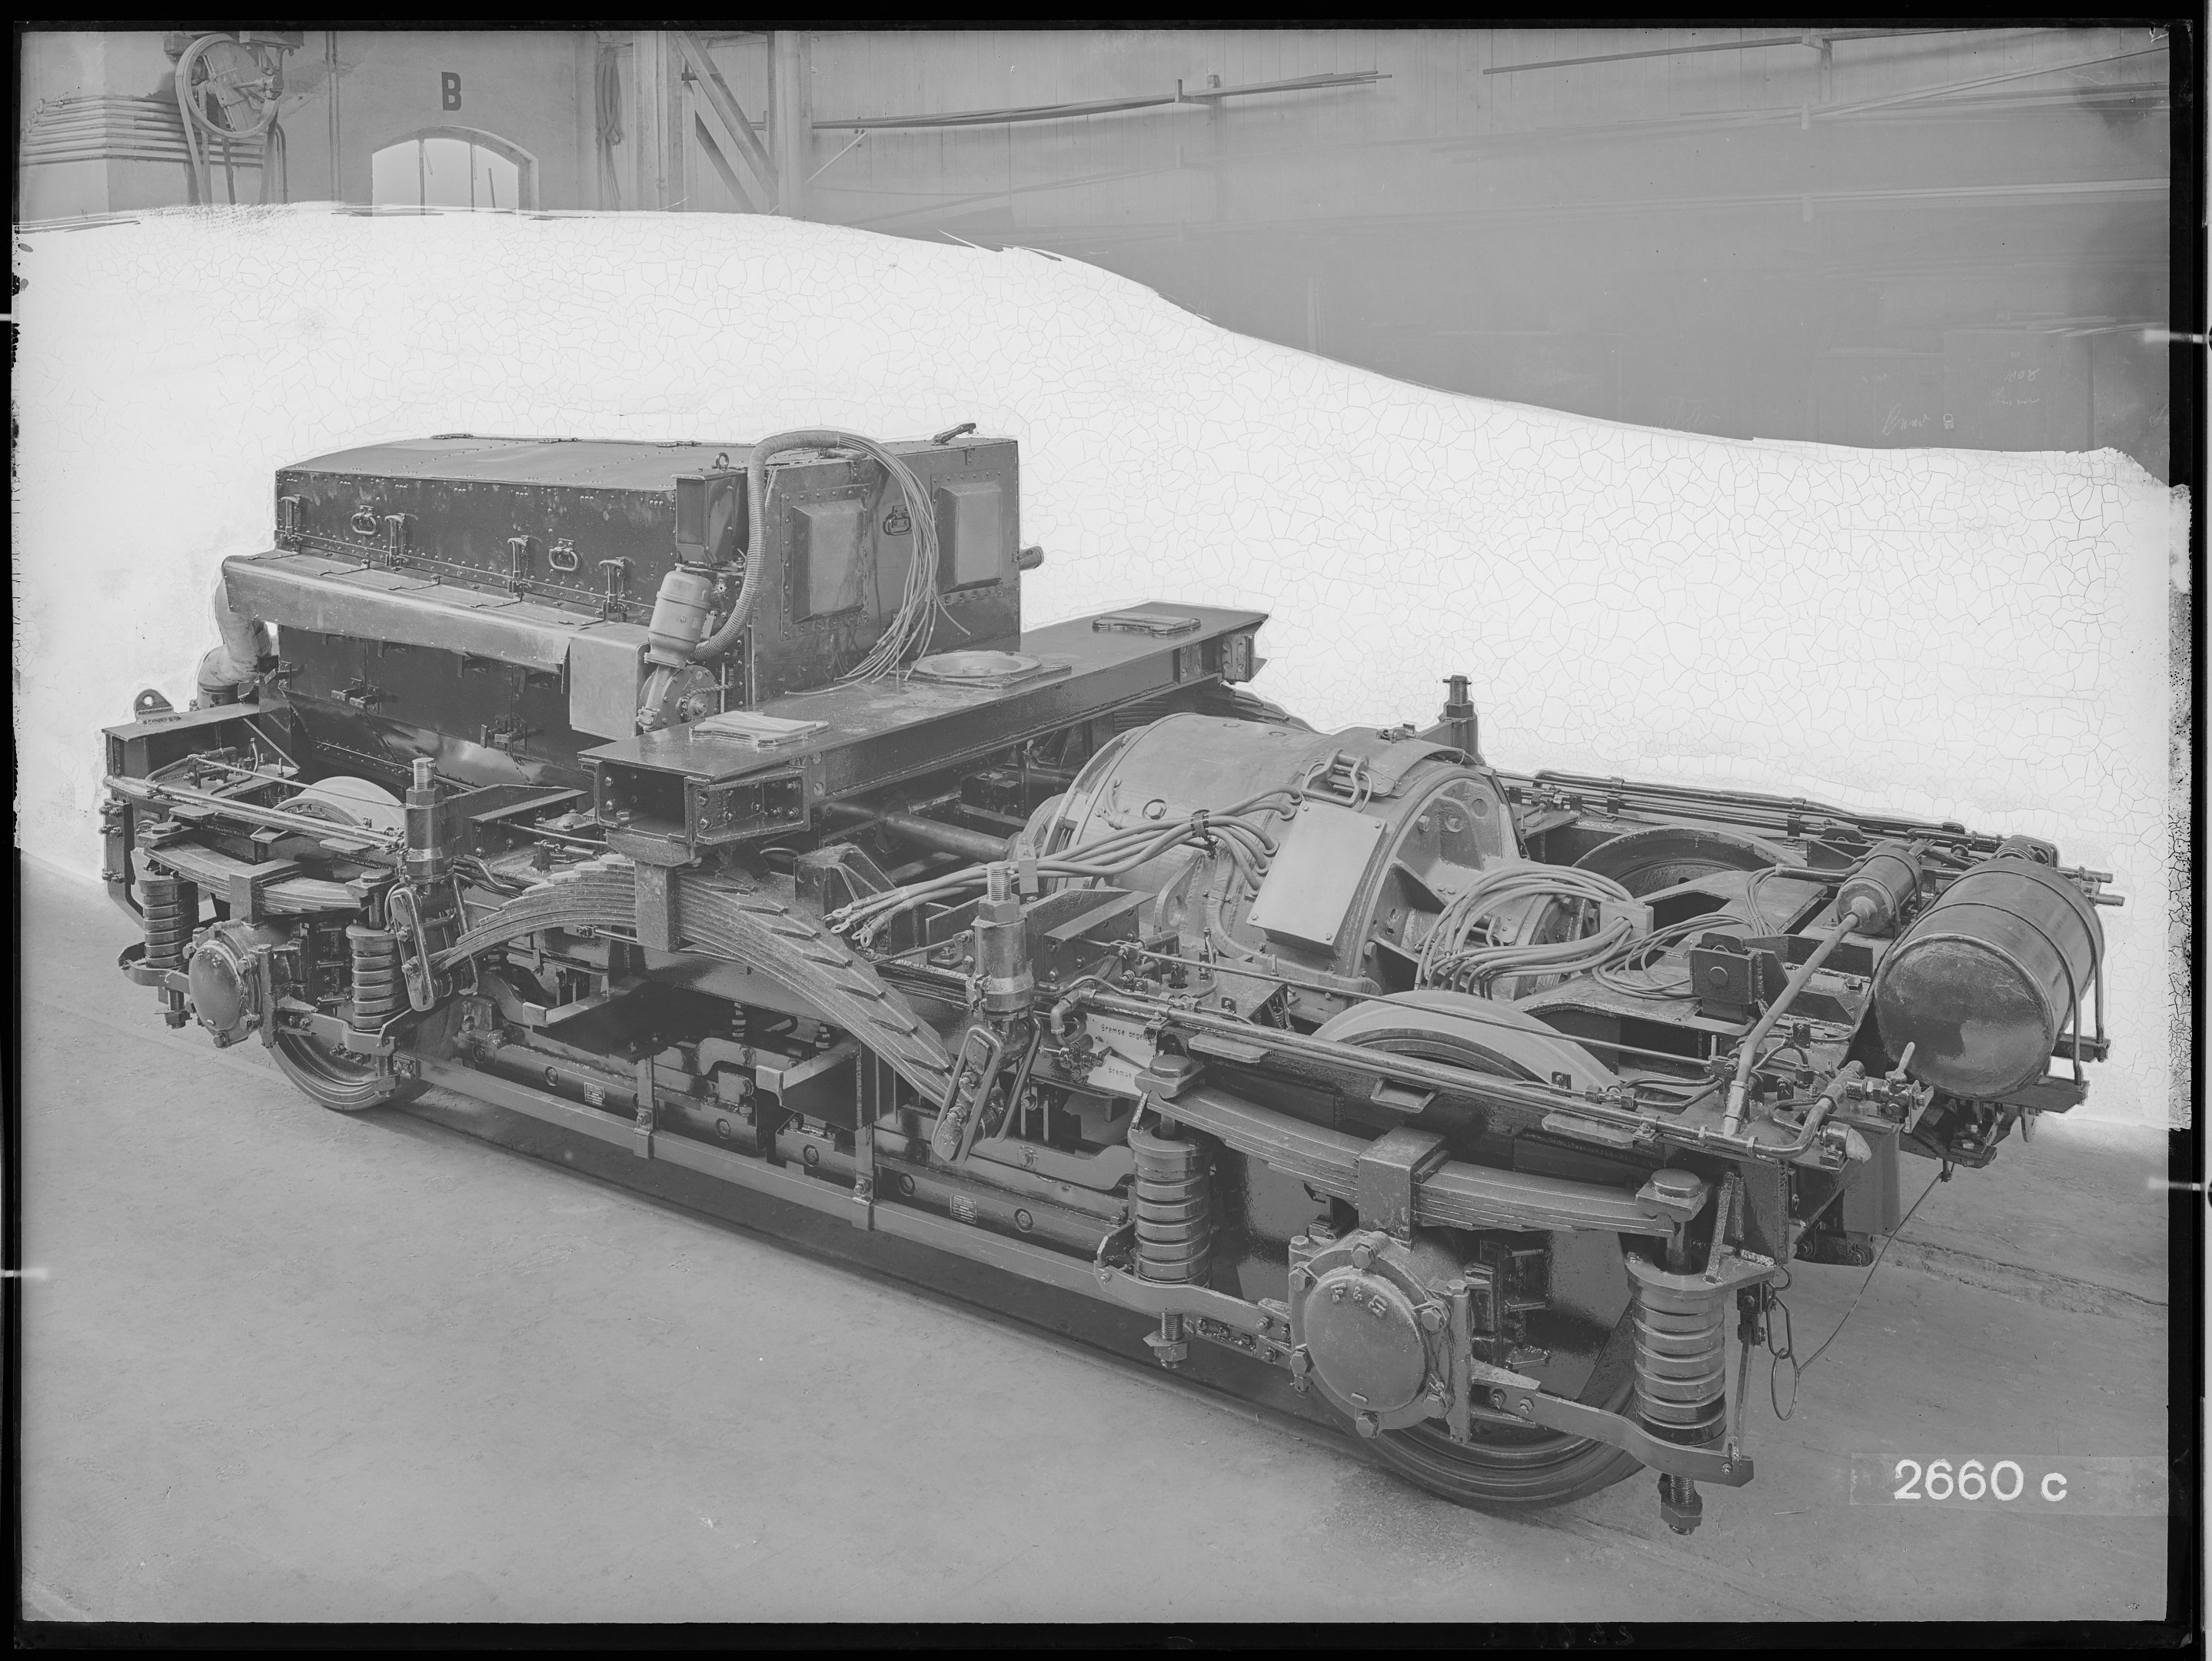 Fotografie: zweiachsiges Maschinen-Enddrehgestell mit Motorhaube (Schrägansicht), Behälterende, 1935. Reichsbahn-Zentralamt für Maschinenbau Berlin (Verkehrsmuseum Dresden CC BY-NC-SA)